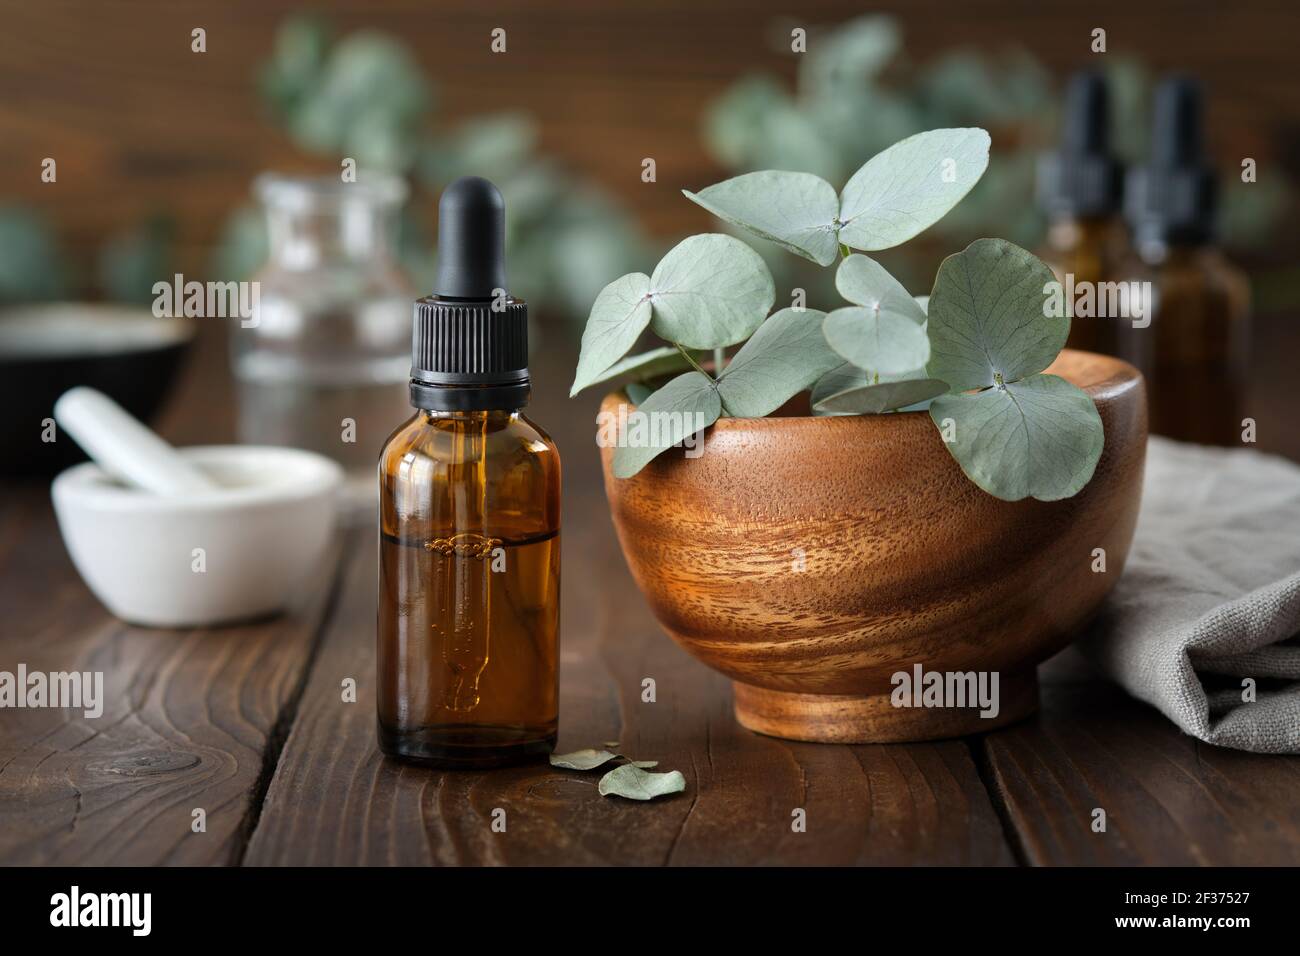 Tropfflasche mit ätherischem Eukalyptus-Öl und Holzschüssel mit grünen Eukalyptus-Blättern. Mörtel und Ölflaschen auf dem Hintergrund, nicht im Fokus. Stockfoto